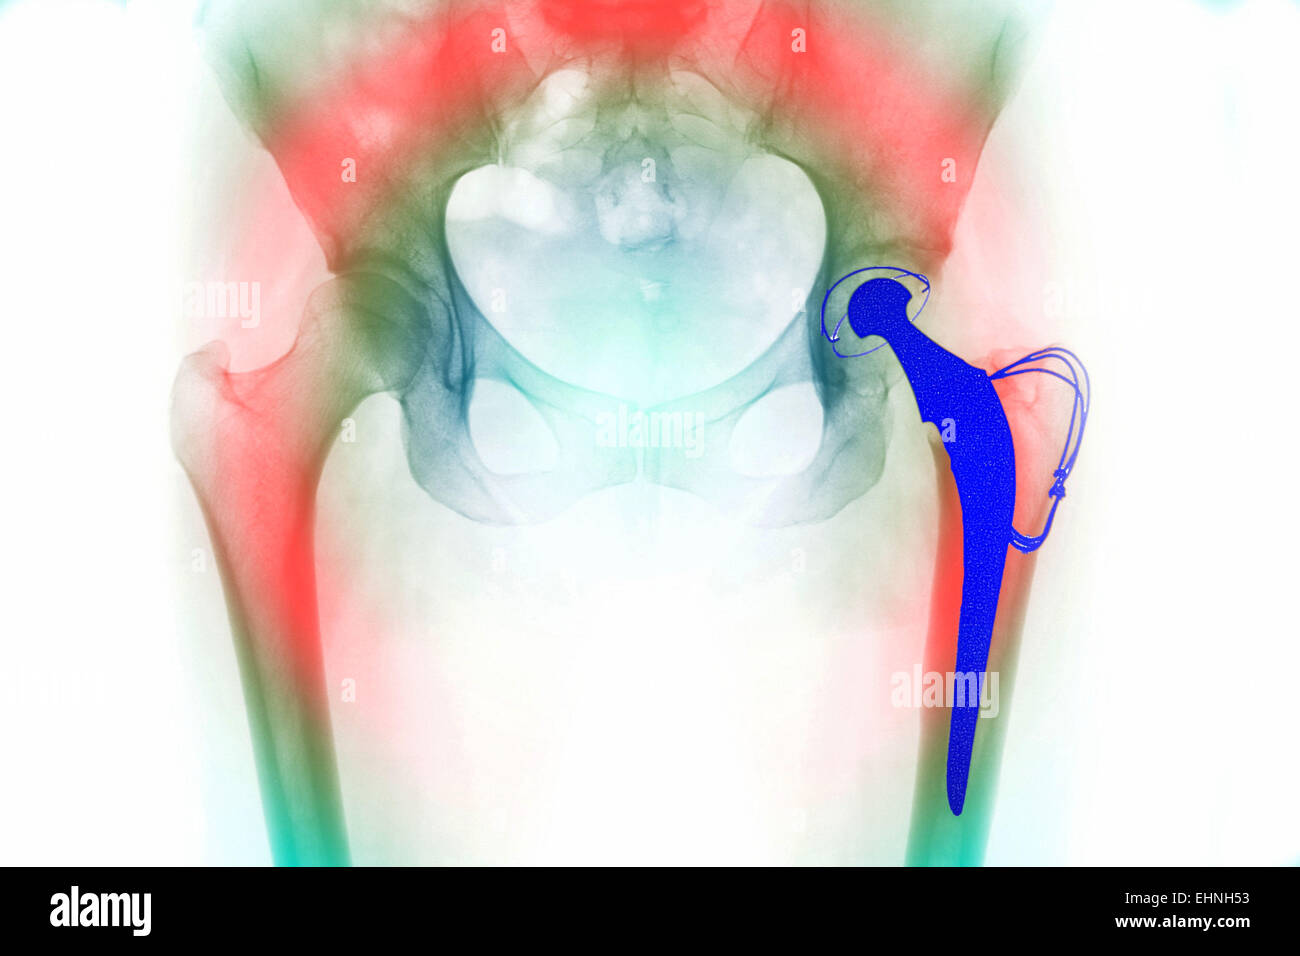 Frontale di raggi X di una totale sostituzione dell'anca , la sostituzione hip è costituito da una sfera e un albero, incorporato nel femore (thigh bone, acceso fino dal centro fondo), che si muove liberamente nella presa protesico impiantato nella pelvi . Foto Stock